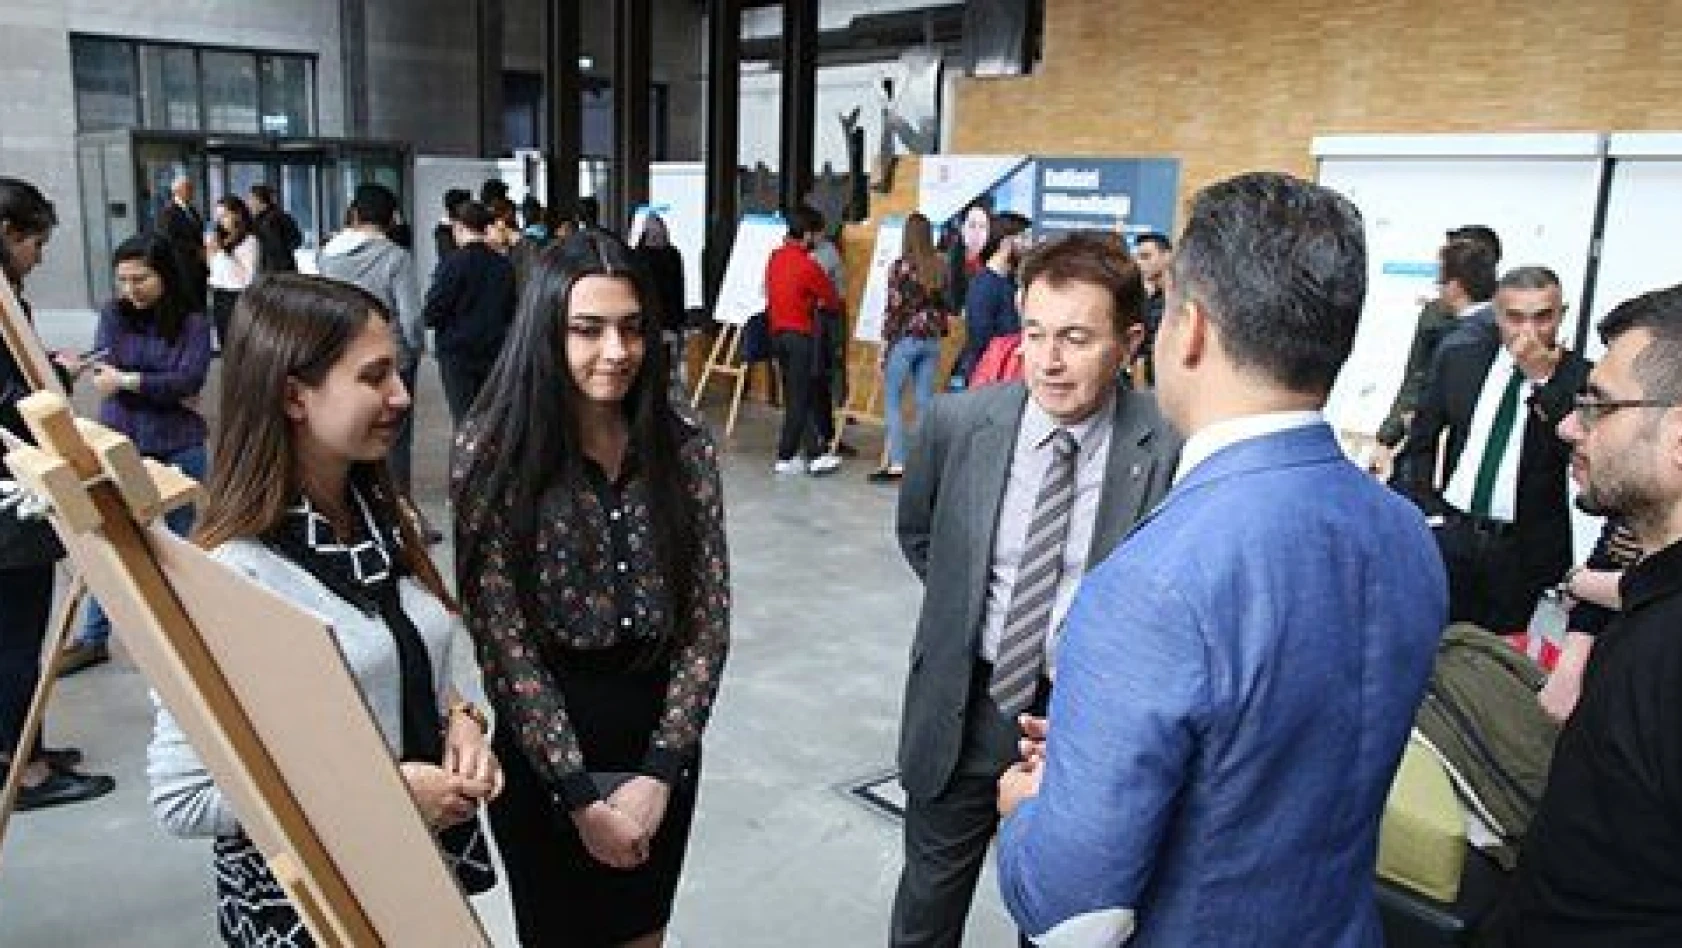 AGÜ'de Sanayi Odaklı Öğrenci Projeleri Fuarı